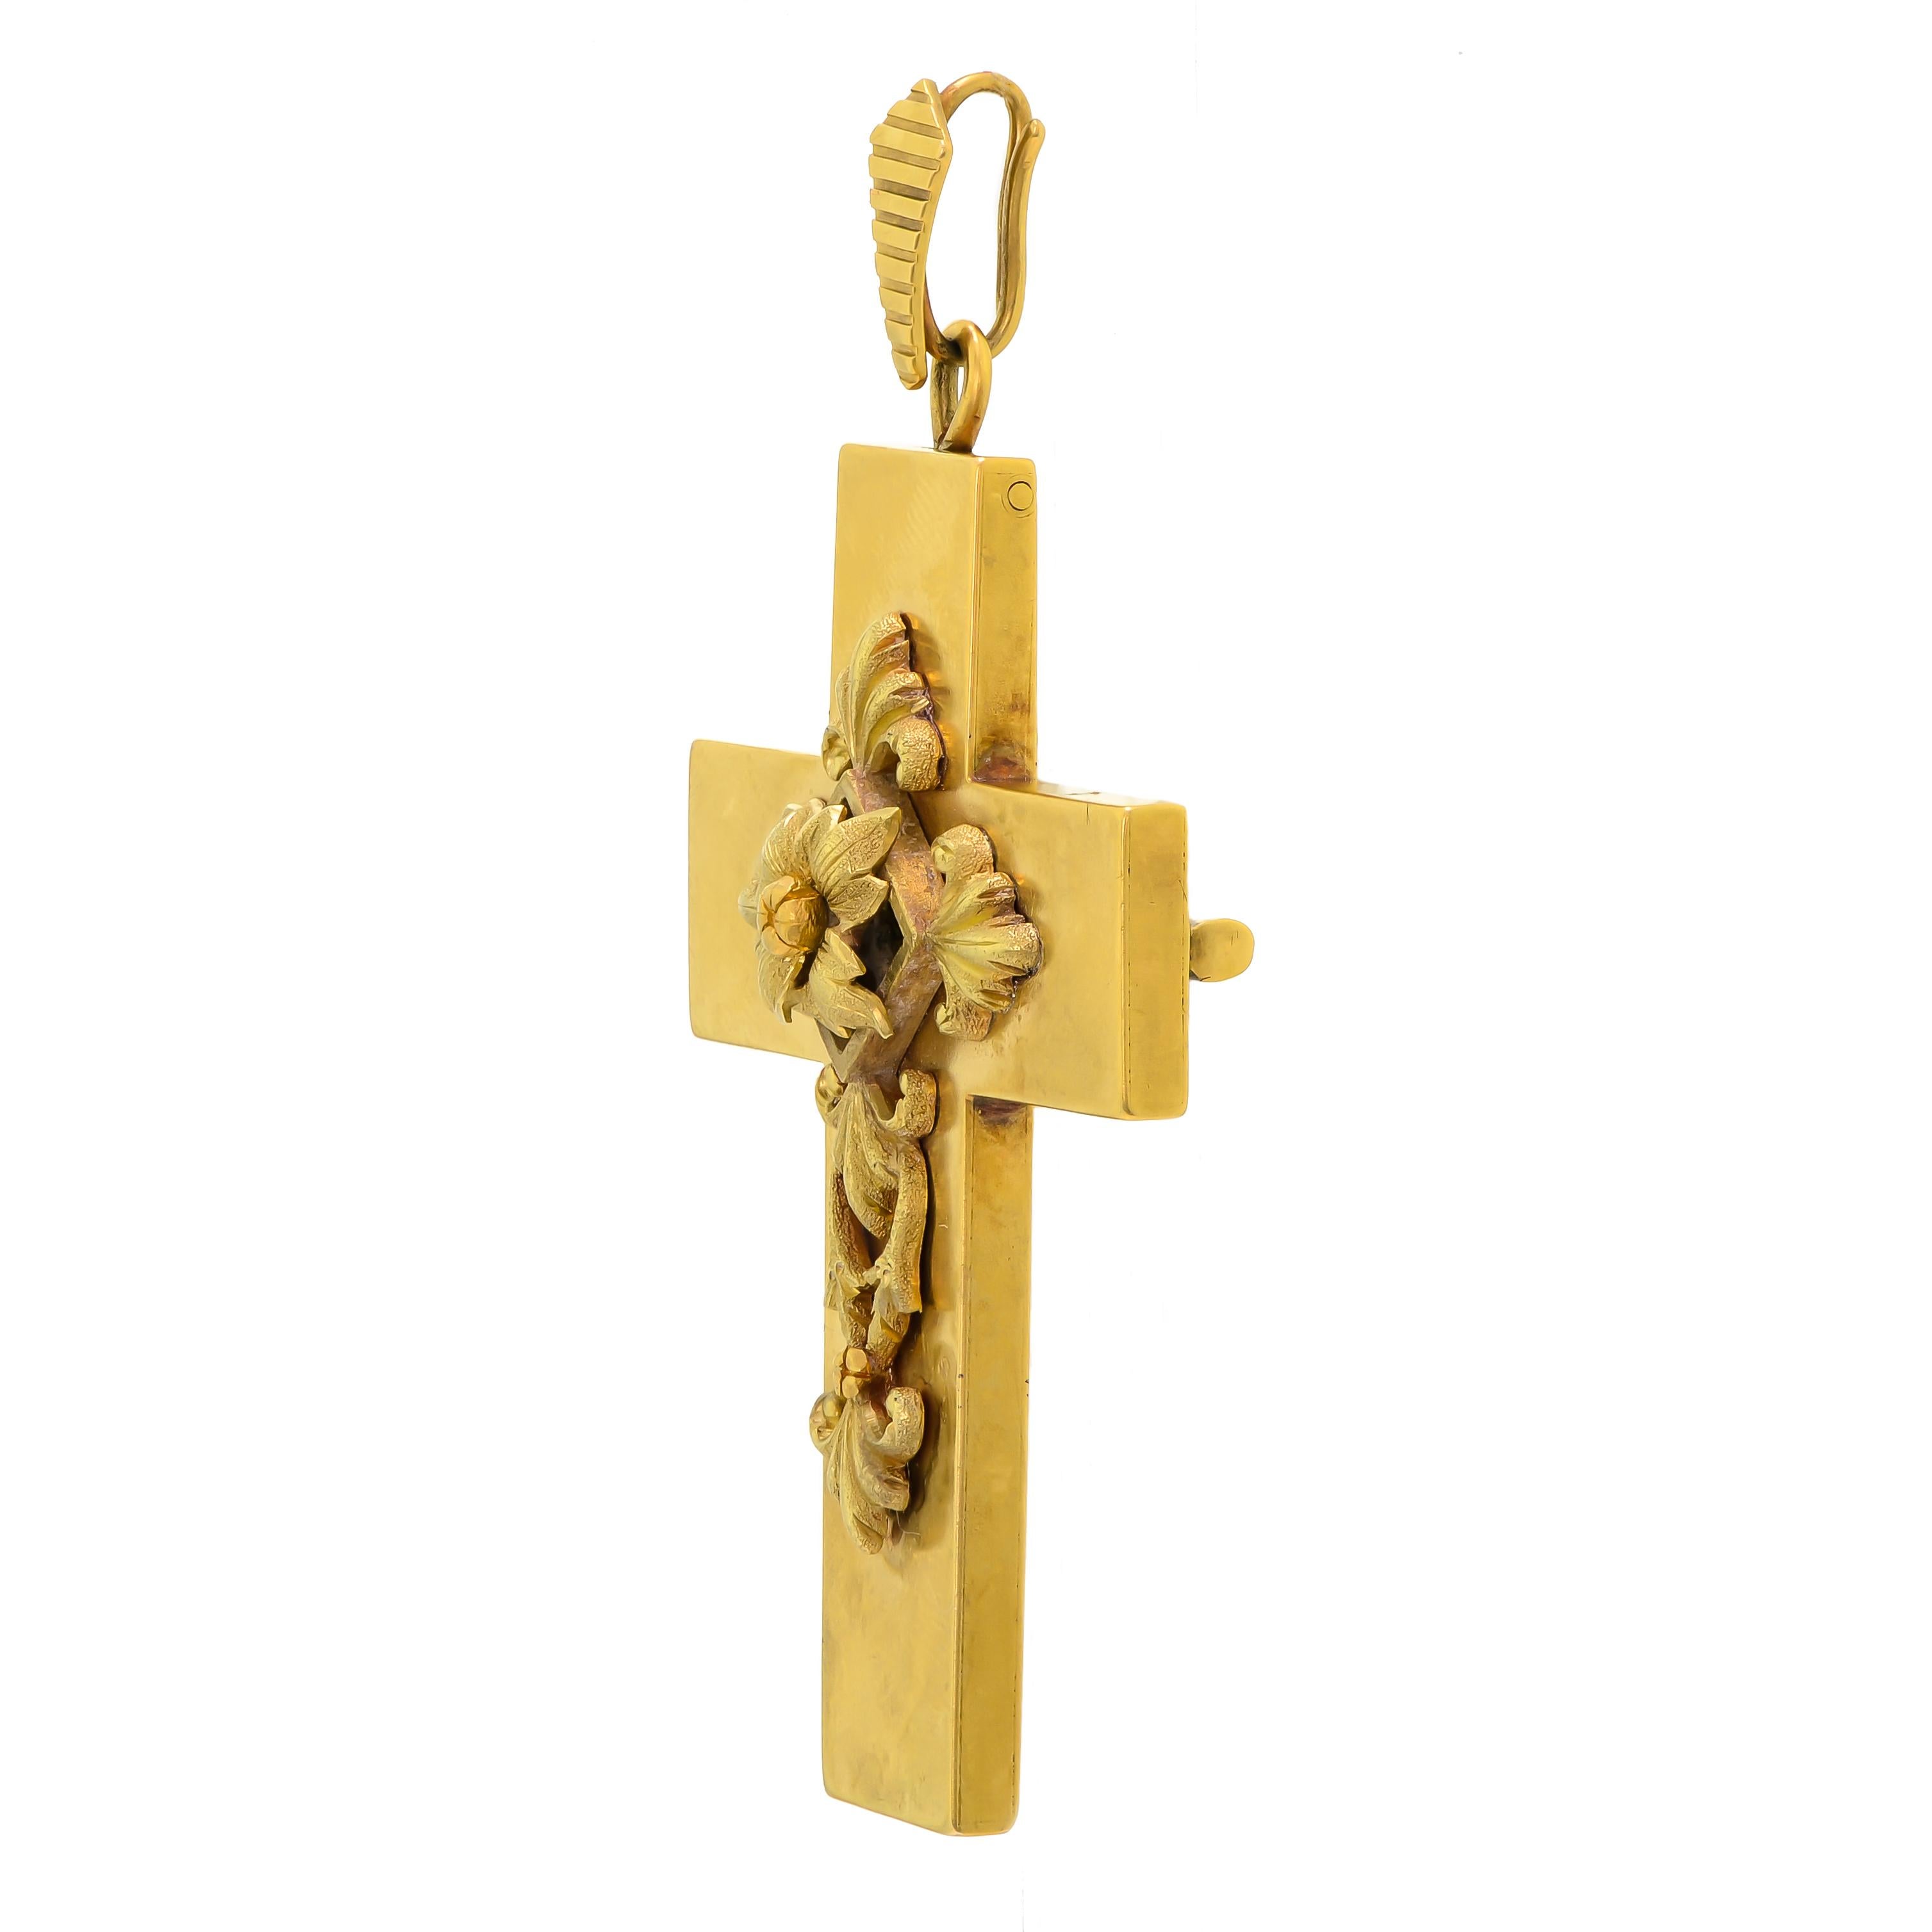 Dieses beeindruckende antike viktorianische Goldkreuz mit einem kunstvollen erhabenen Blumen-, Blatt- und Efeudesign aus Gelb-, Grün- und Roségold bewahrt im Laufe der Zeit eine schöne Patina, die im Laufe der Zeit natürlich erzeugt wurde. Das Kreuz